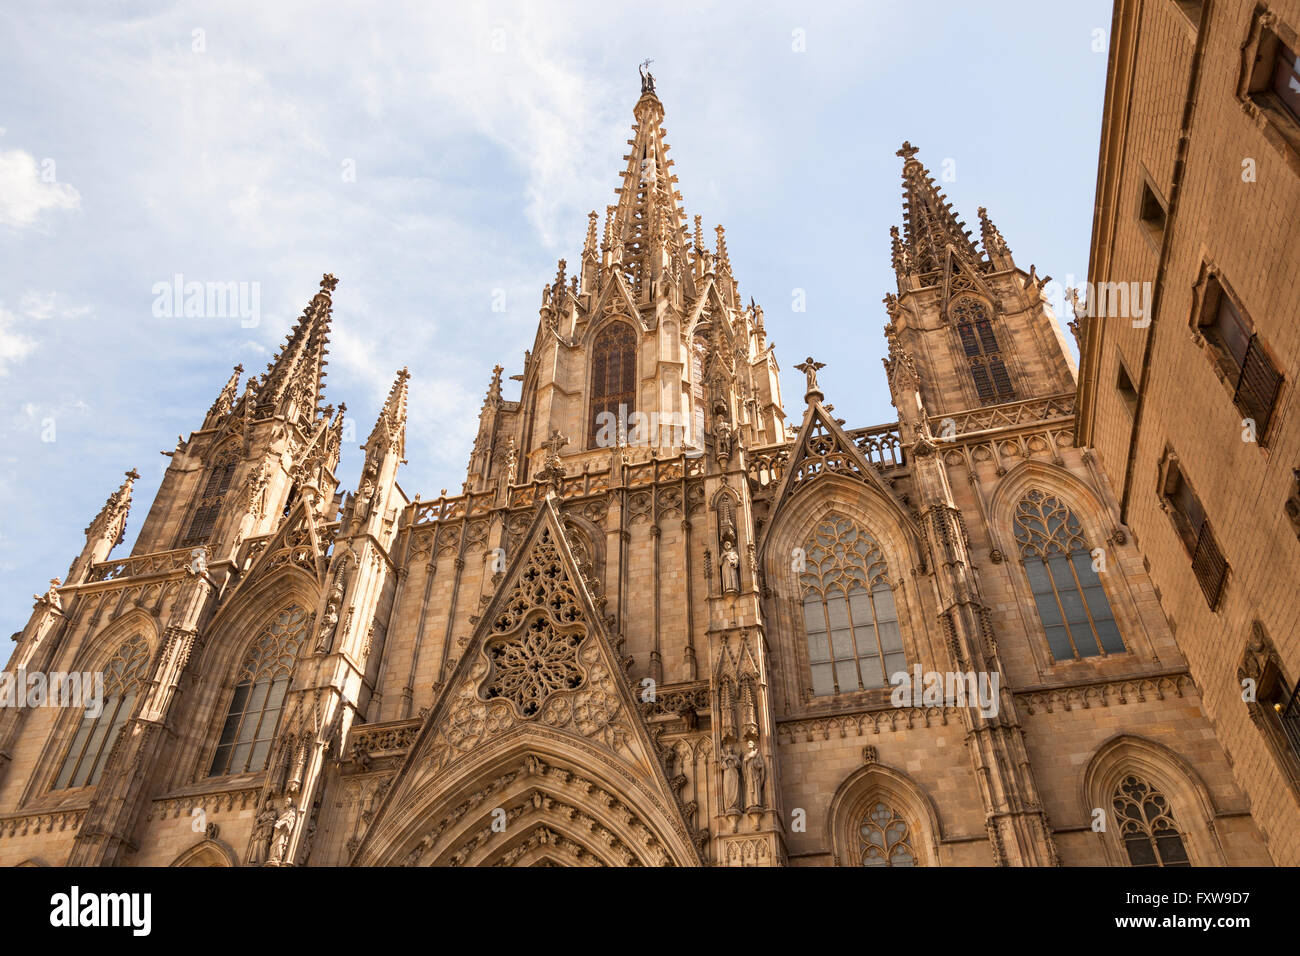 La Cathédrale de Barcelone, la cathédrale de la Sainte Croix et Sainte Eulalia, Barcelone, Espagne Banque D'Images